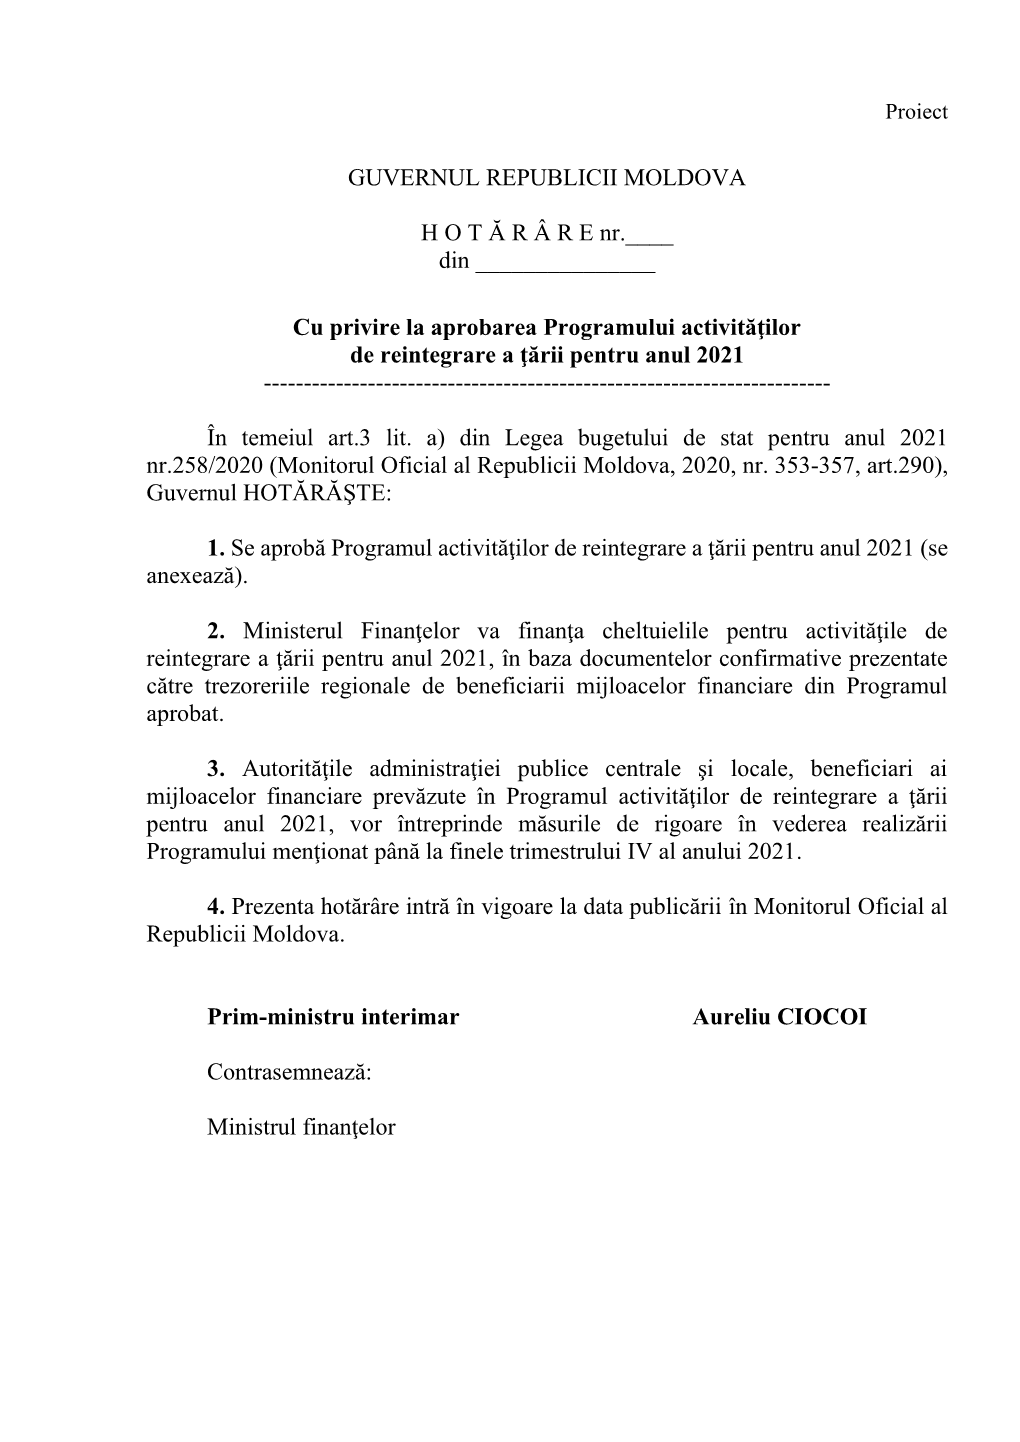 GUVERNUL REPUBLICII MOLDOVA H O T Ă R Â R E Nr.___Din Cu Privire La Aprobarea Programului Activităţilor D